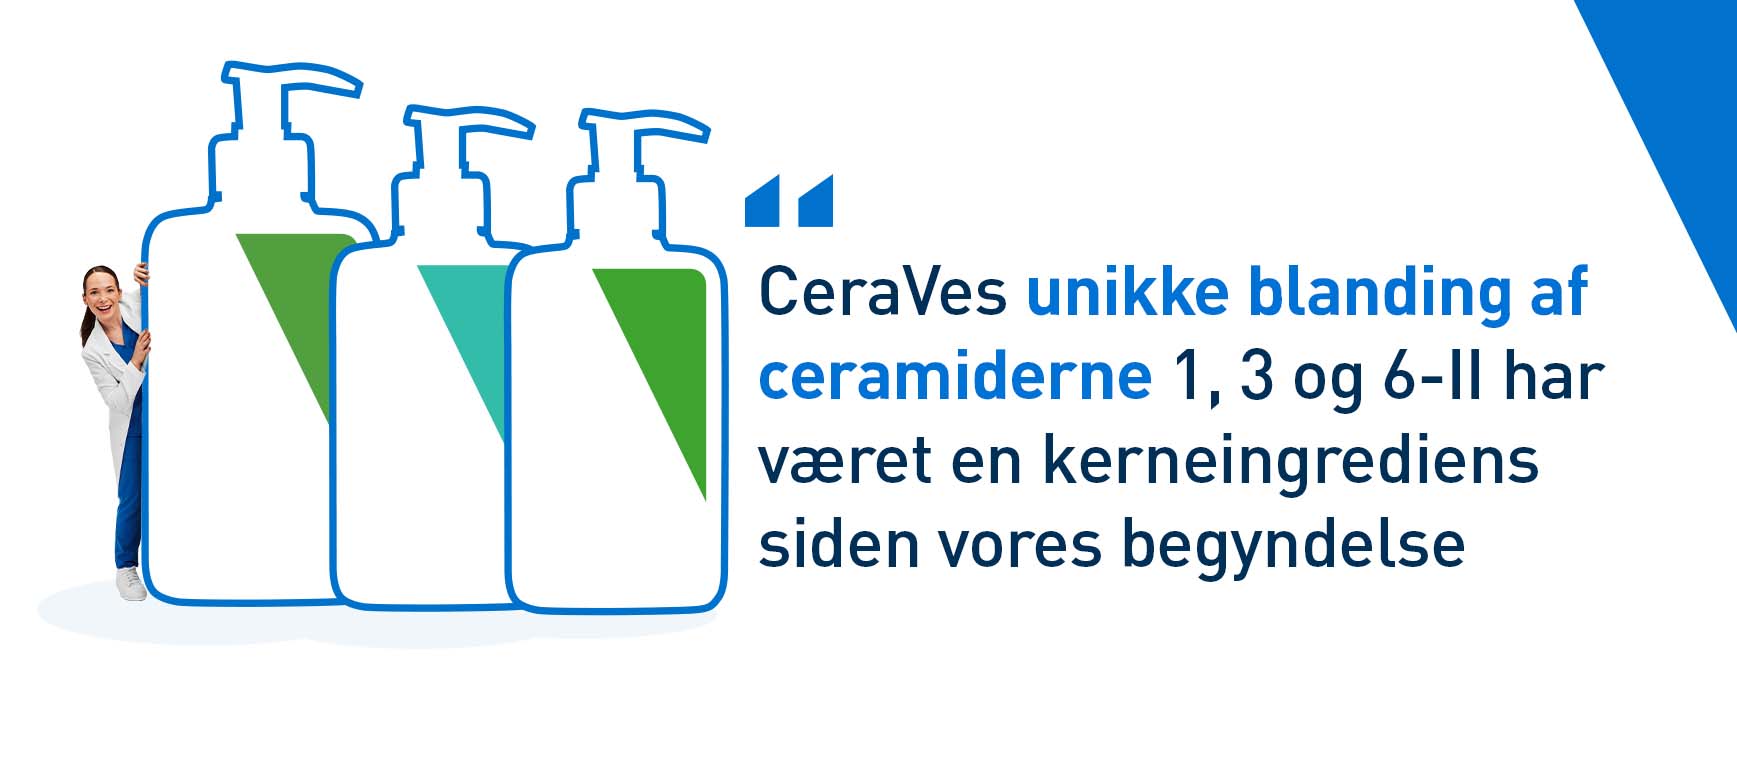 Ceramiderne 1, 3 og 6-II er kerneingredienser i CeraVes produkter